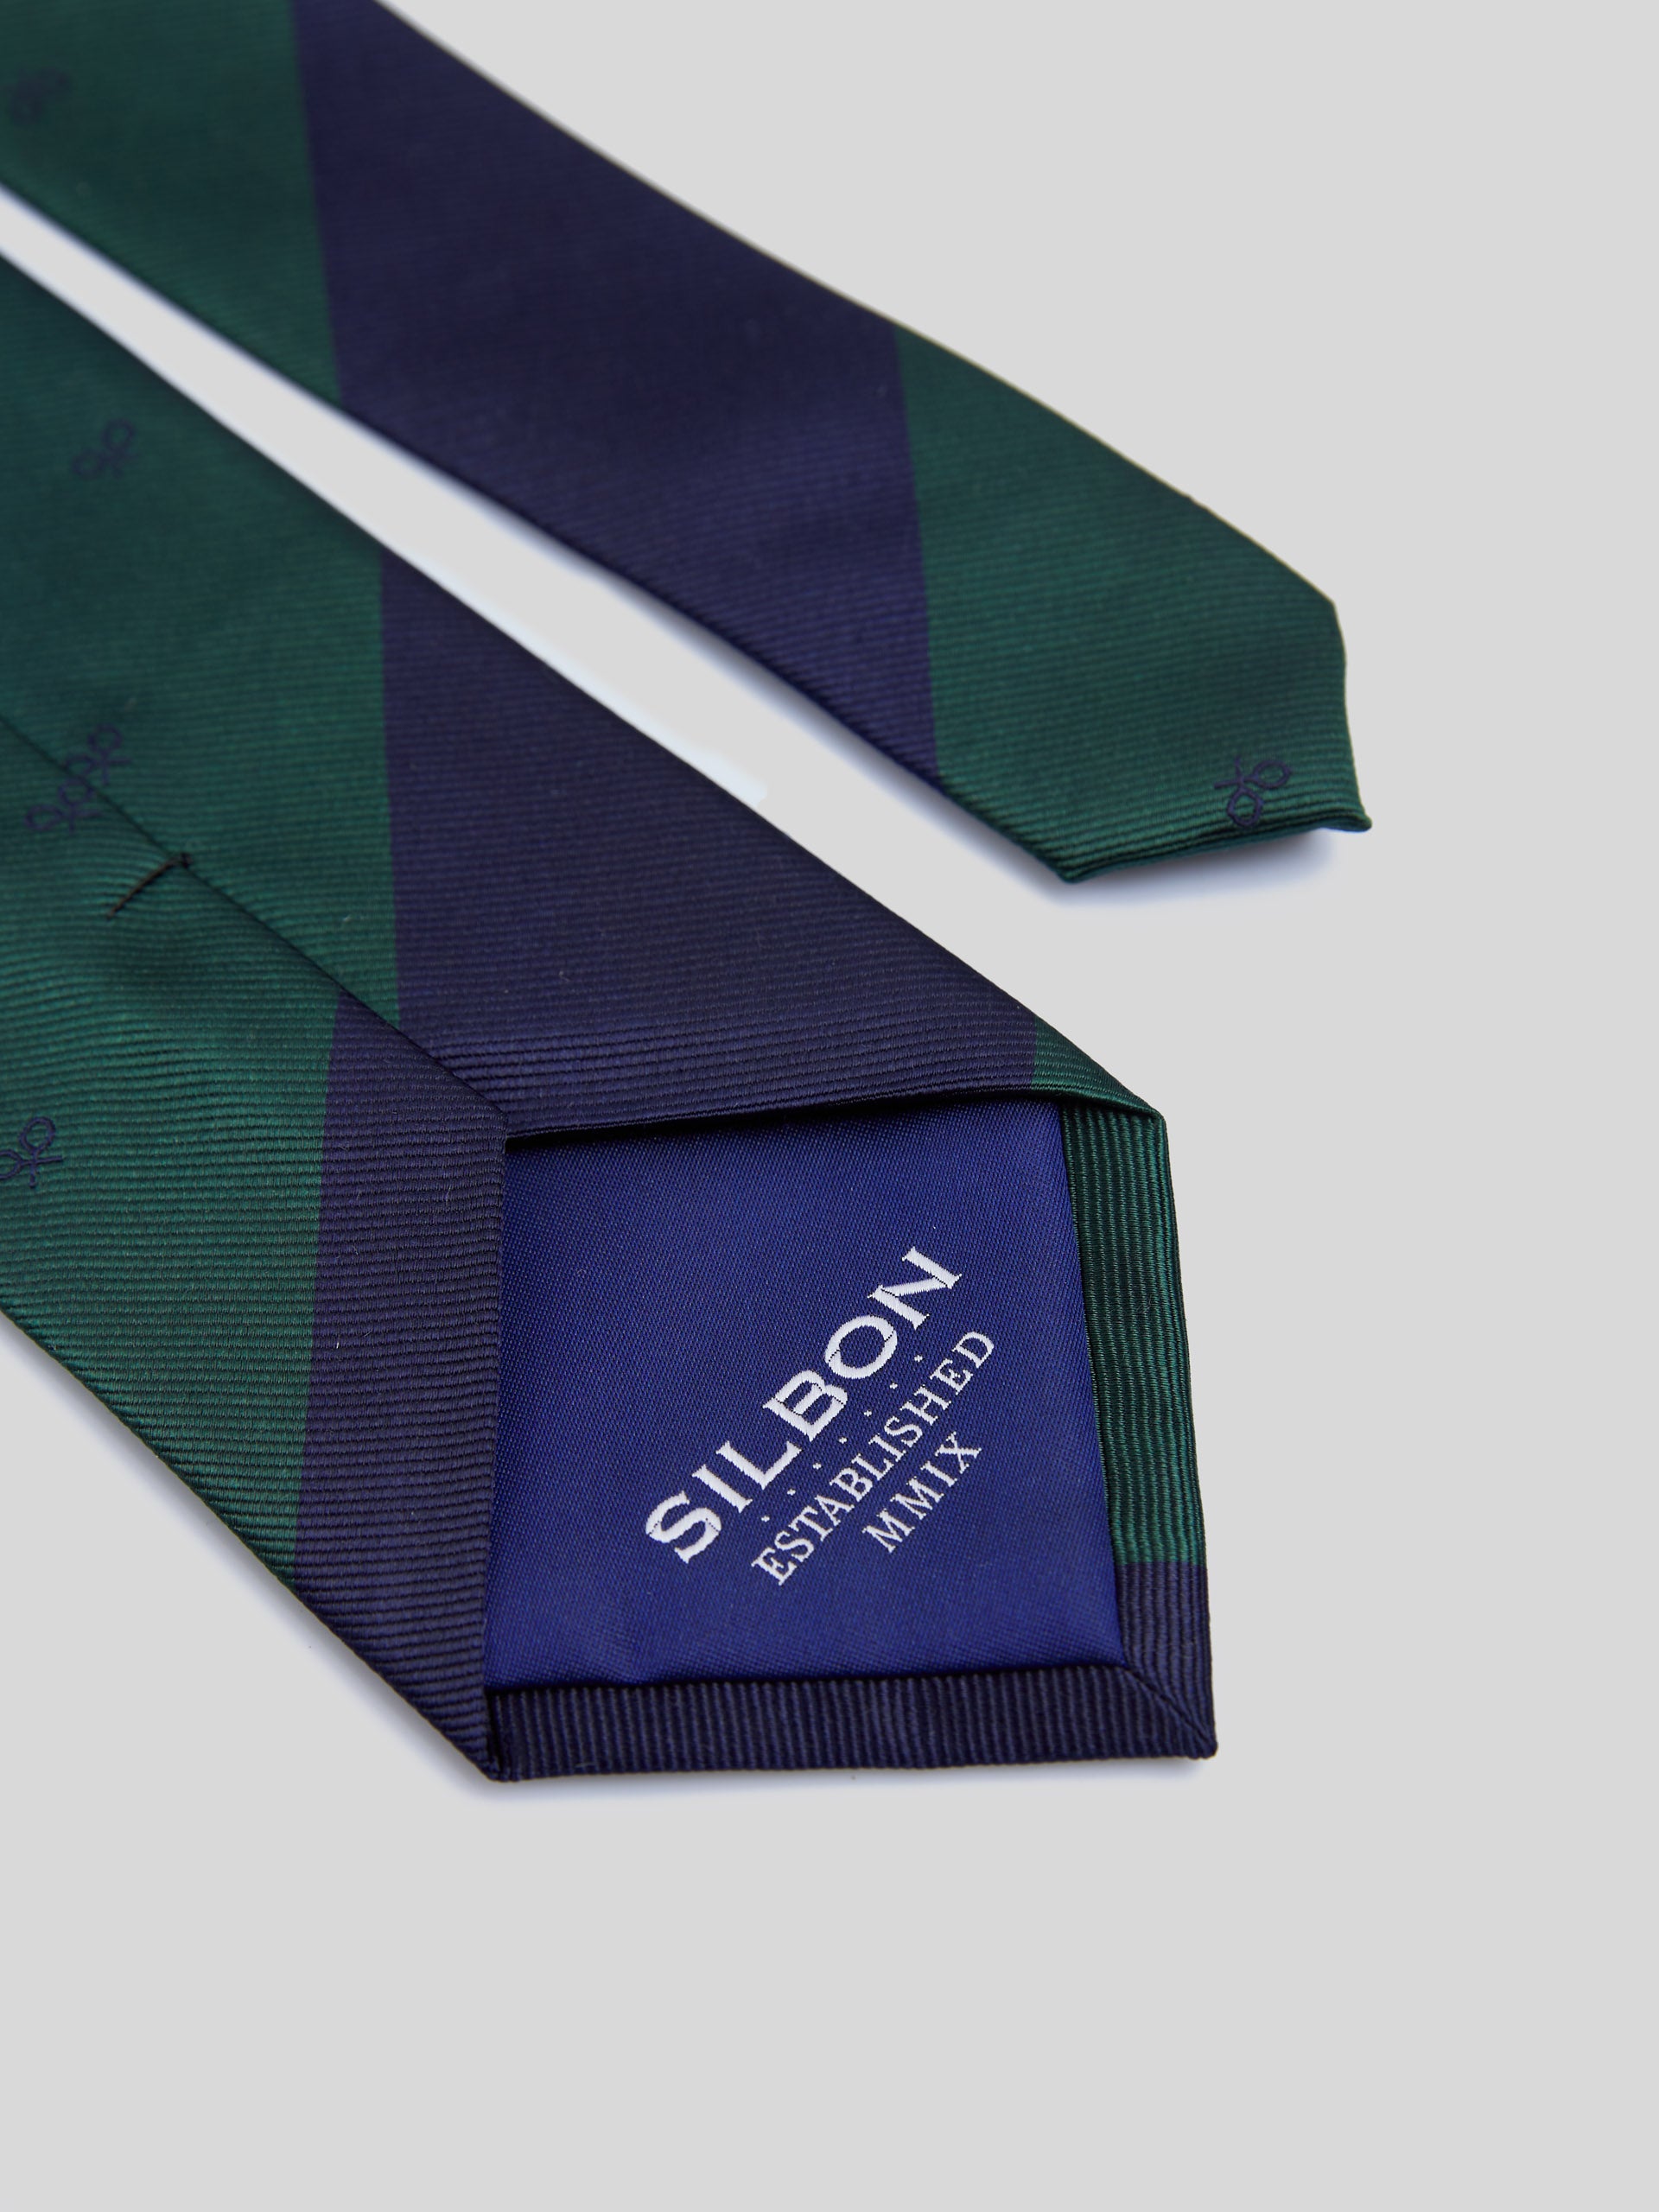 Corbata silbon rayas verdes raquetas